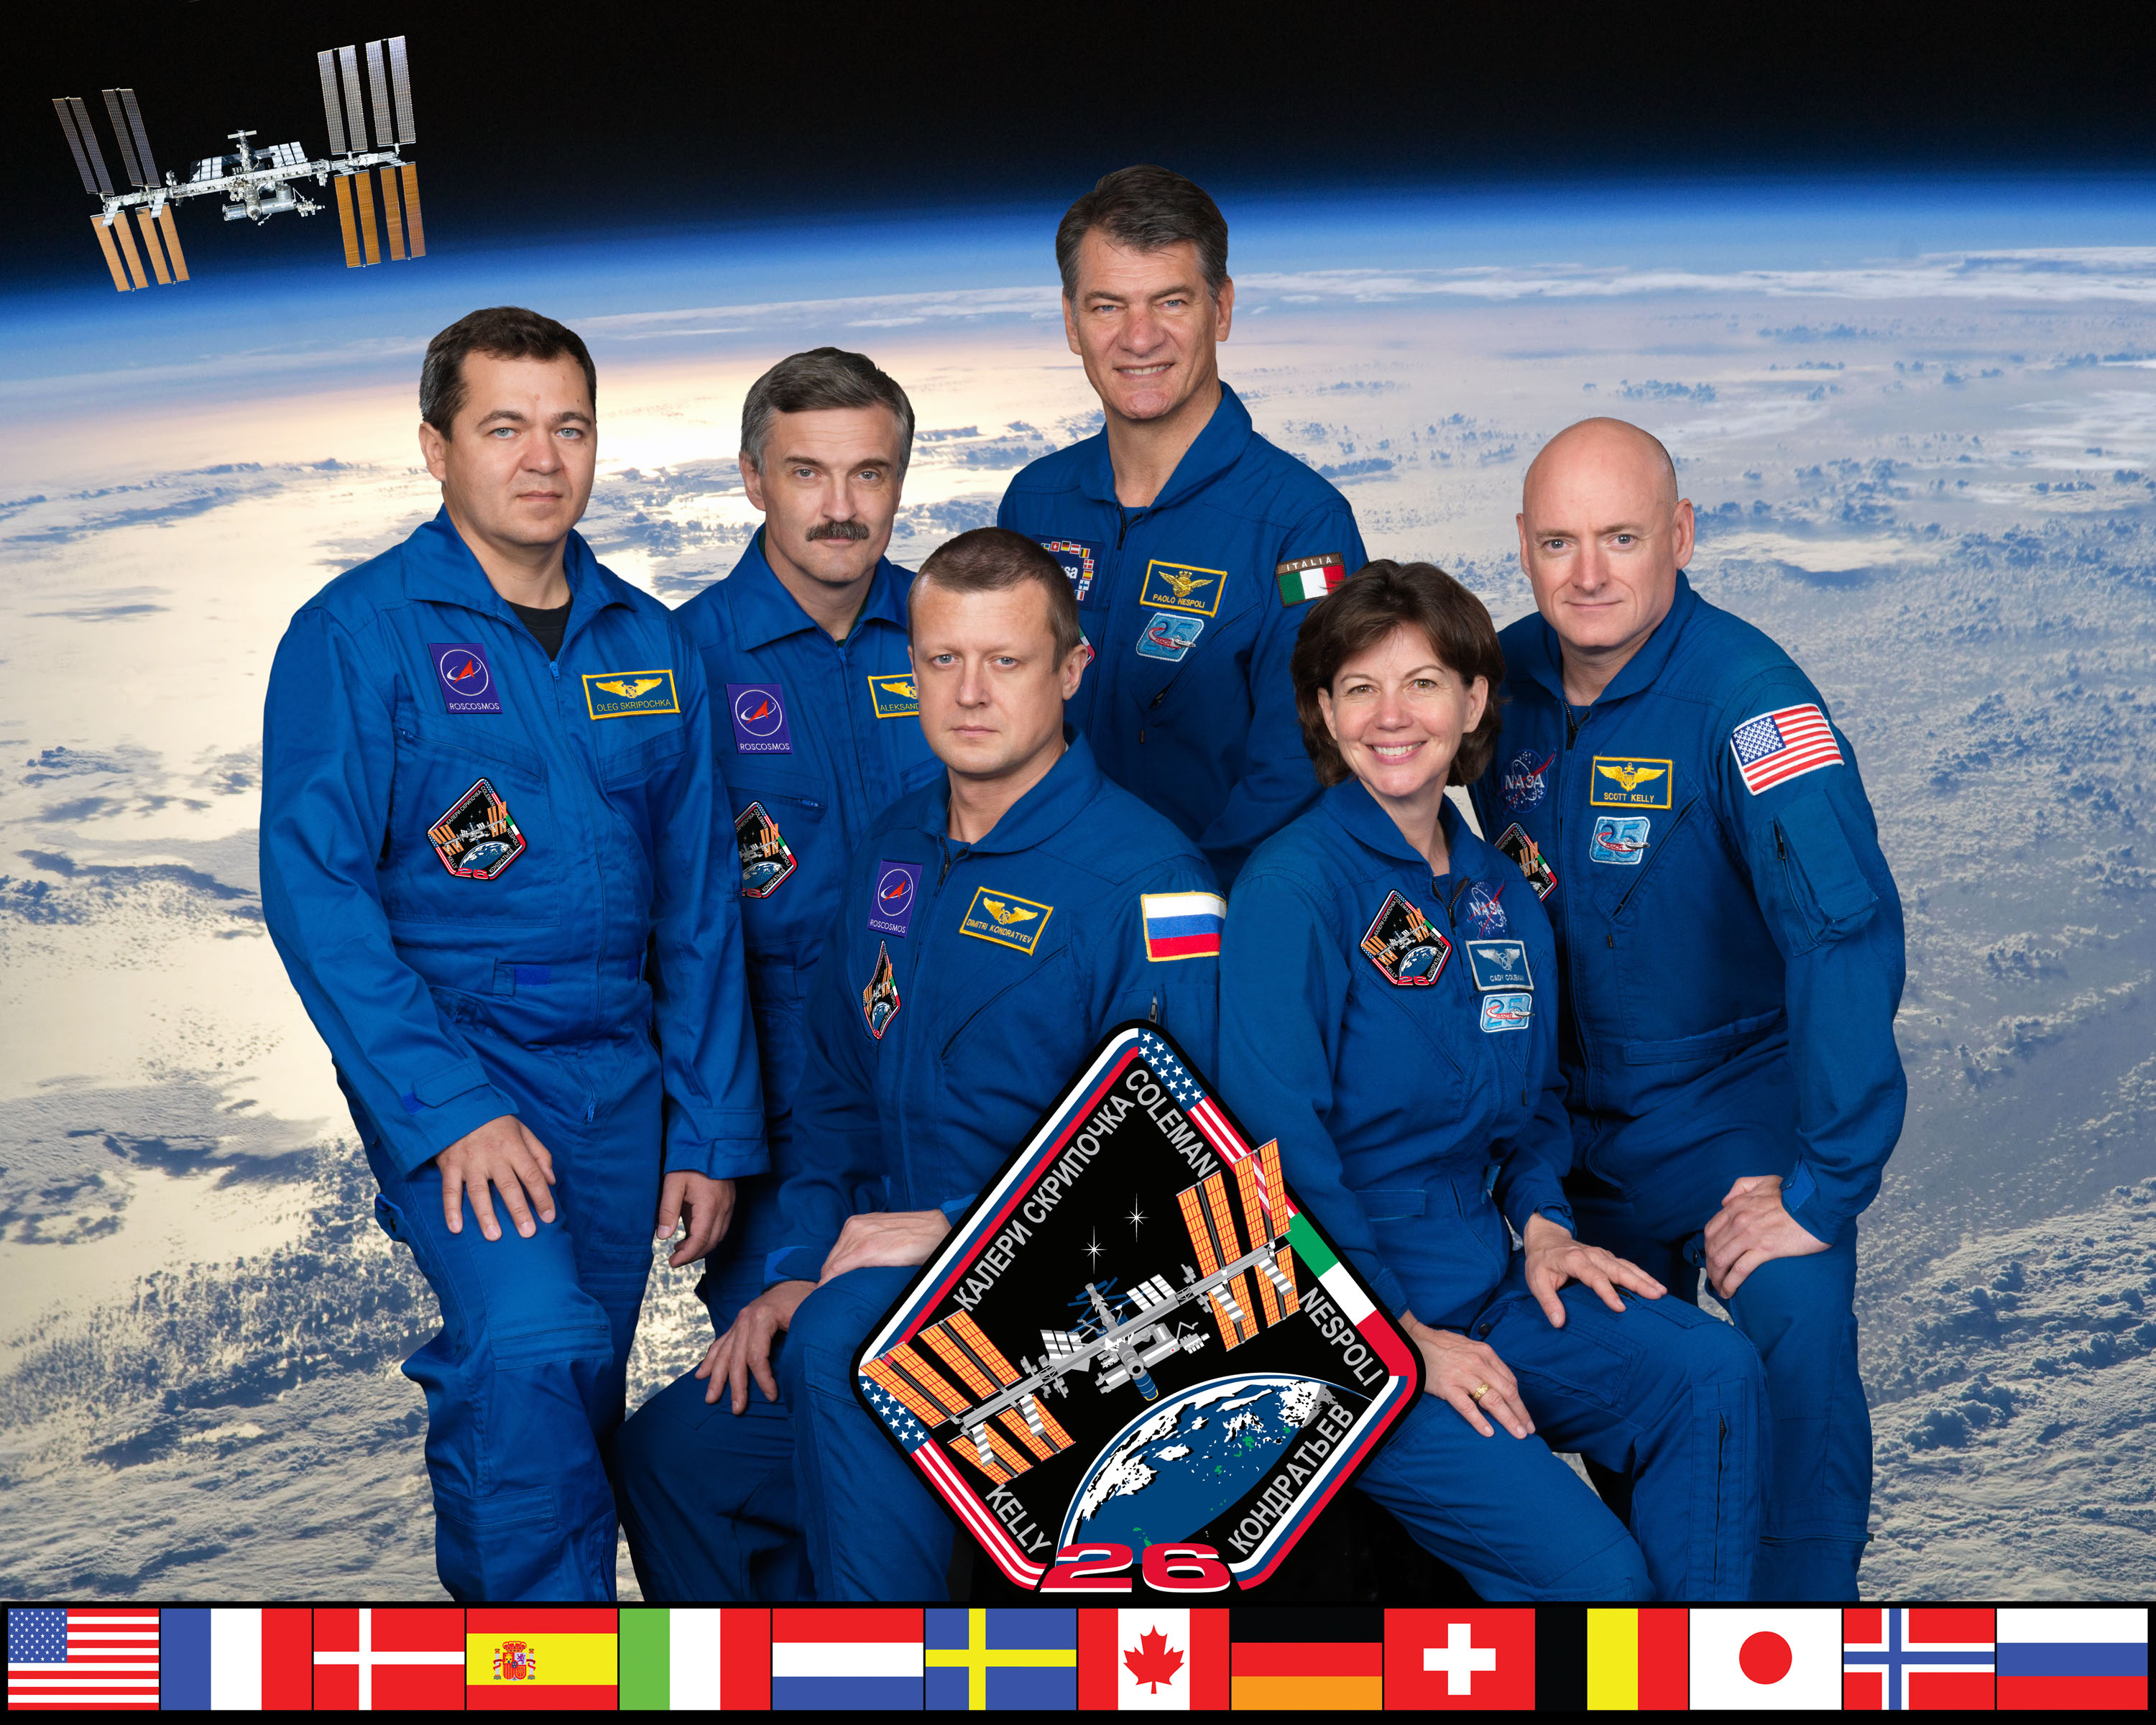 Expedition 26 crew portrait